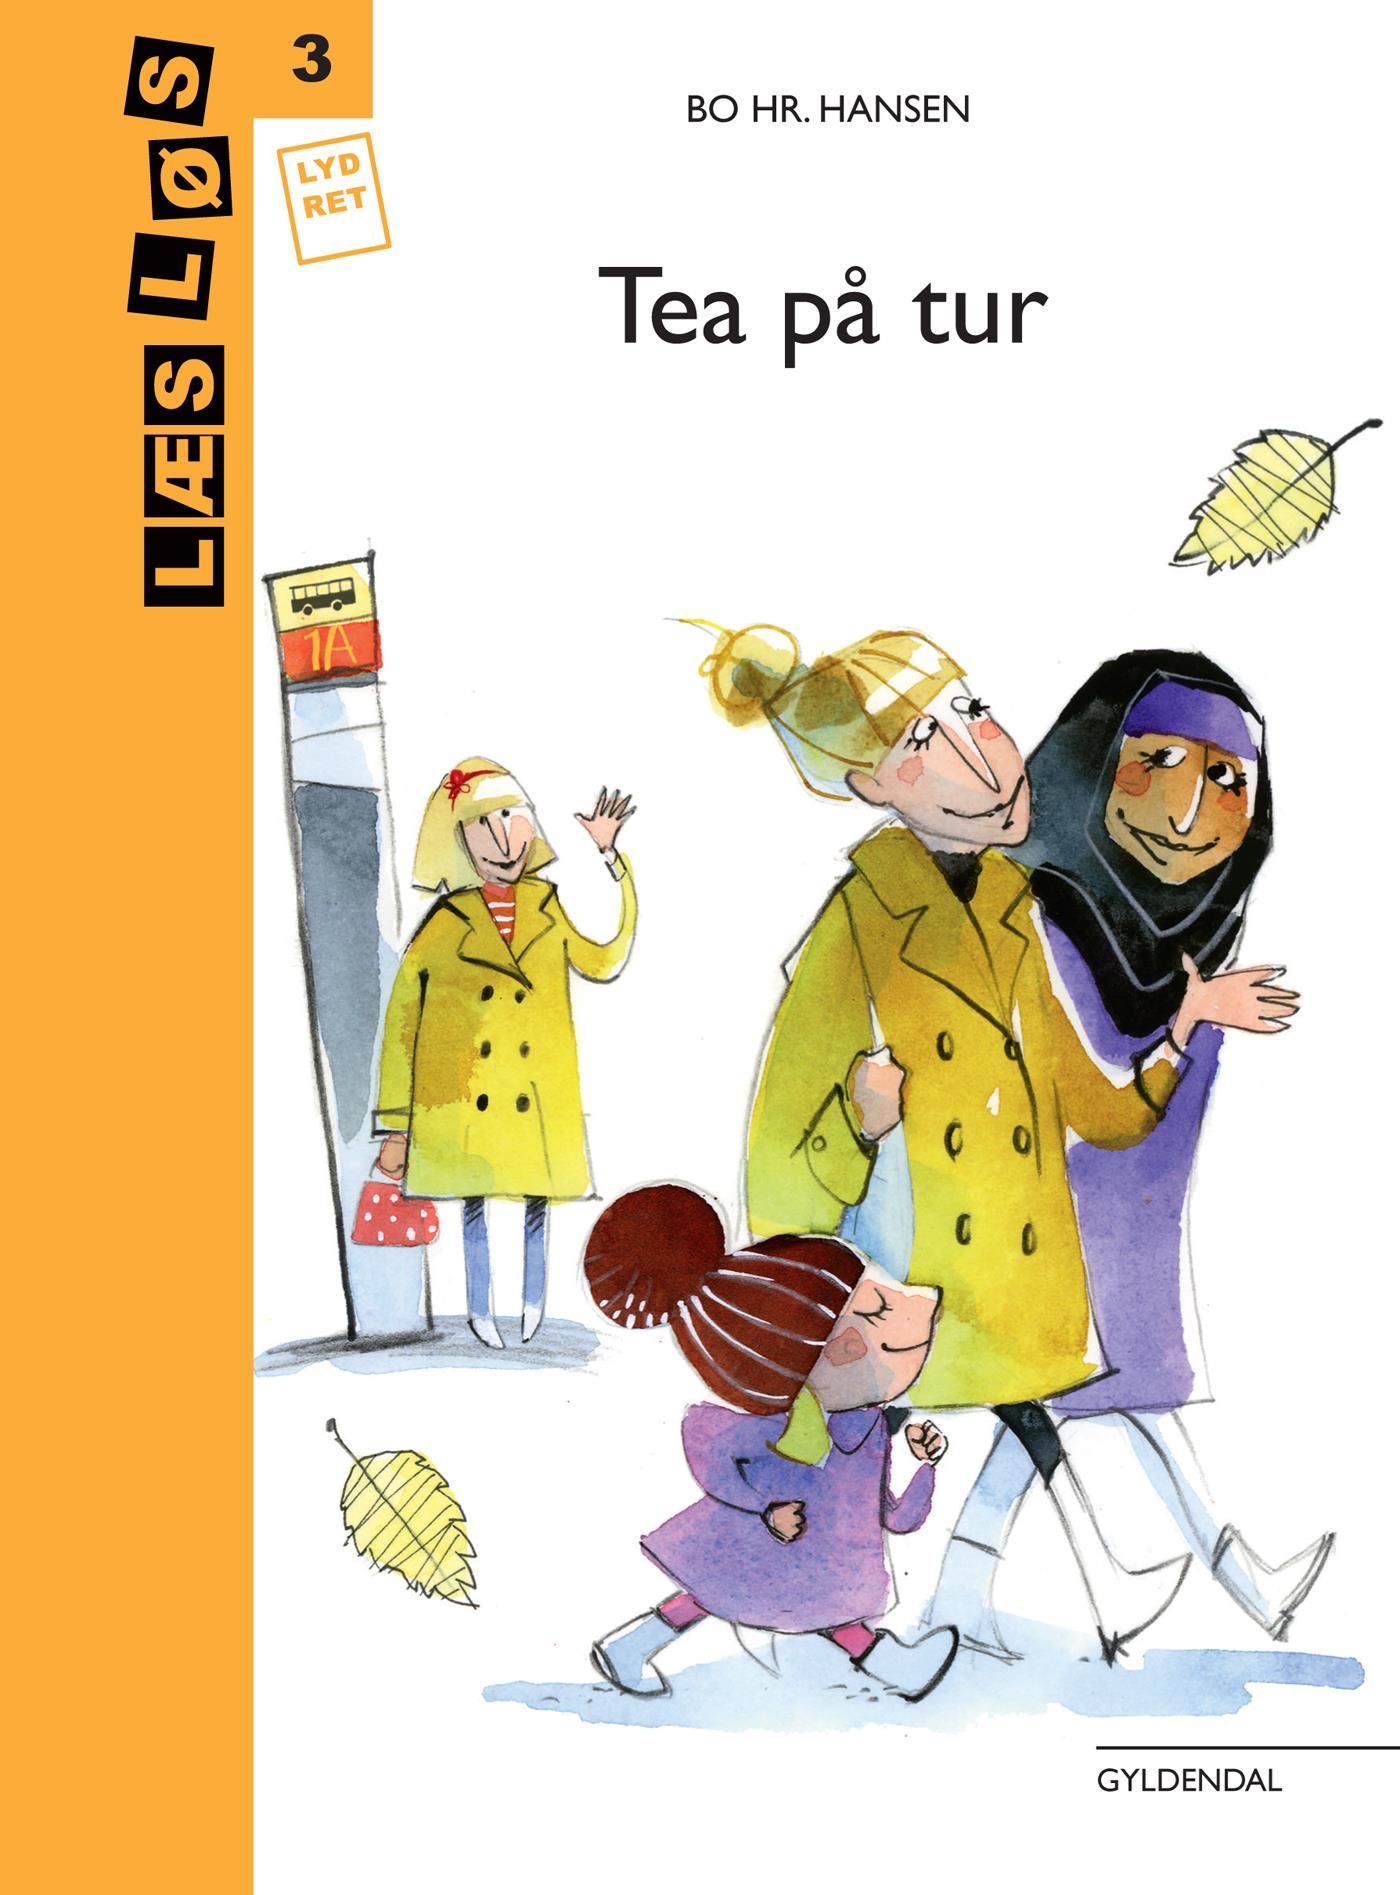 Tea på tur, eBook by Bo hr. Hansen